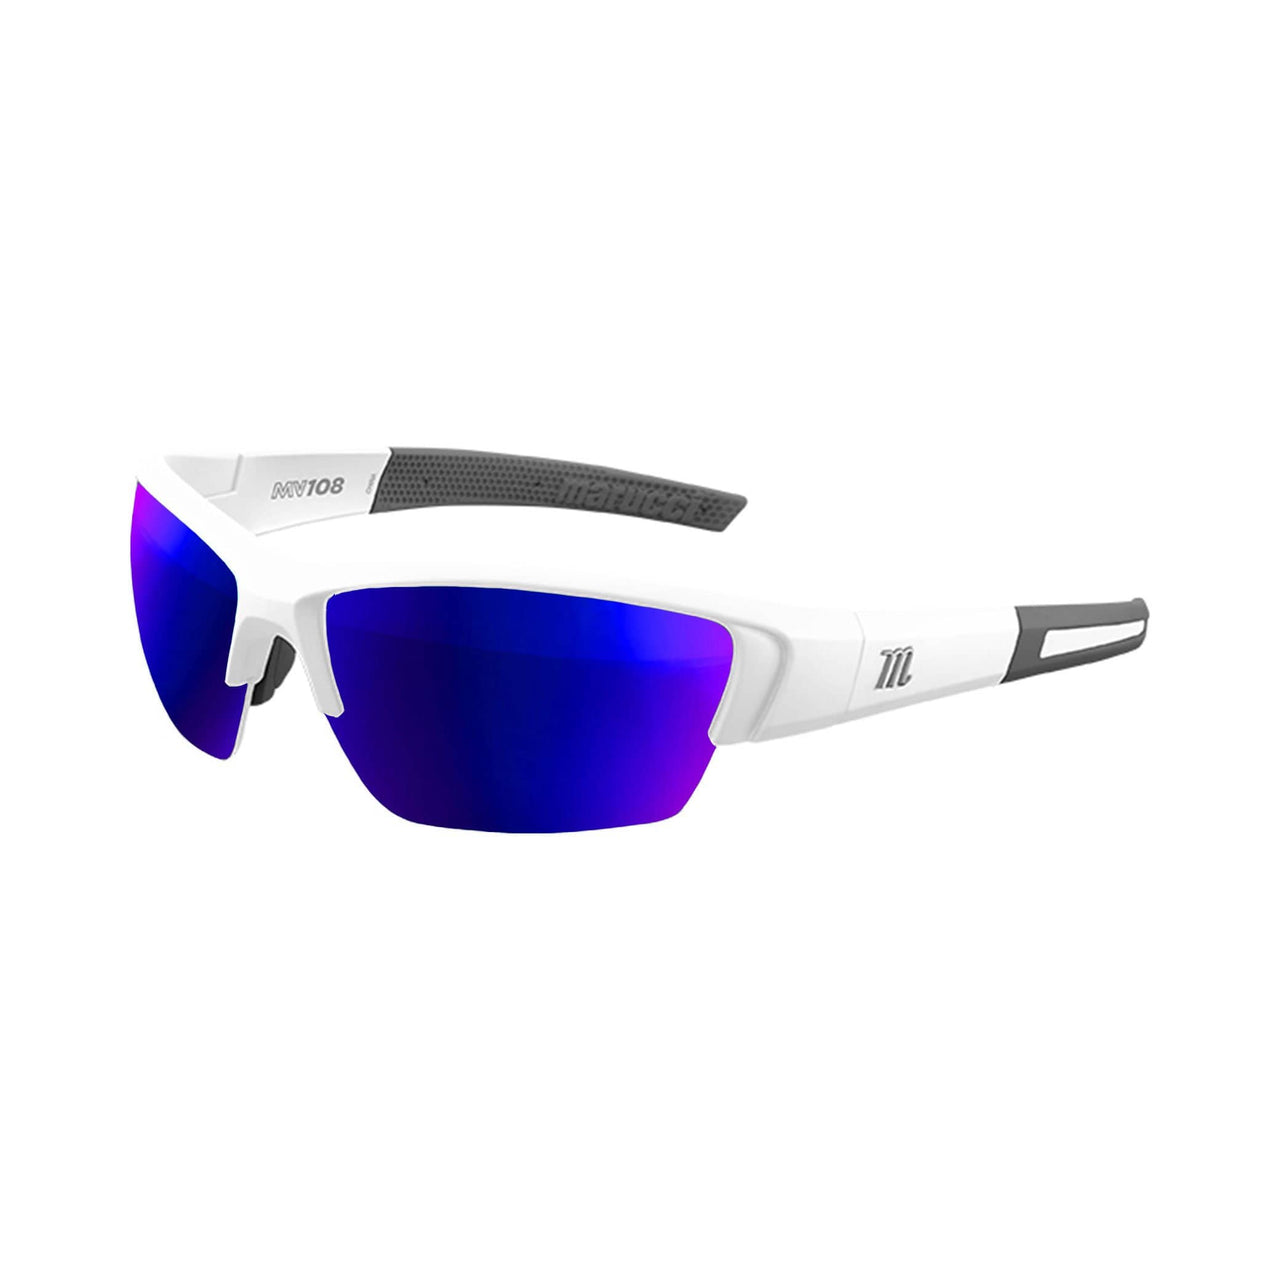 Marucci Sunglasses Matte White - Green Lens with Blue Mirror Marucci MV108 Performance Sunglasses